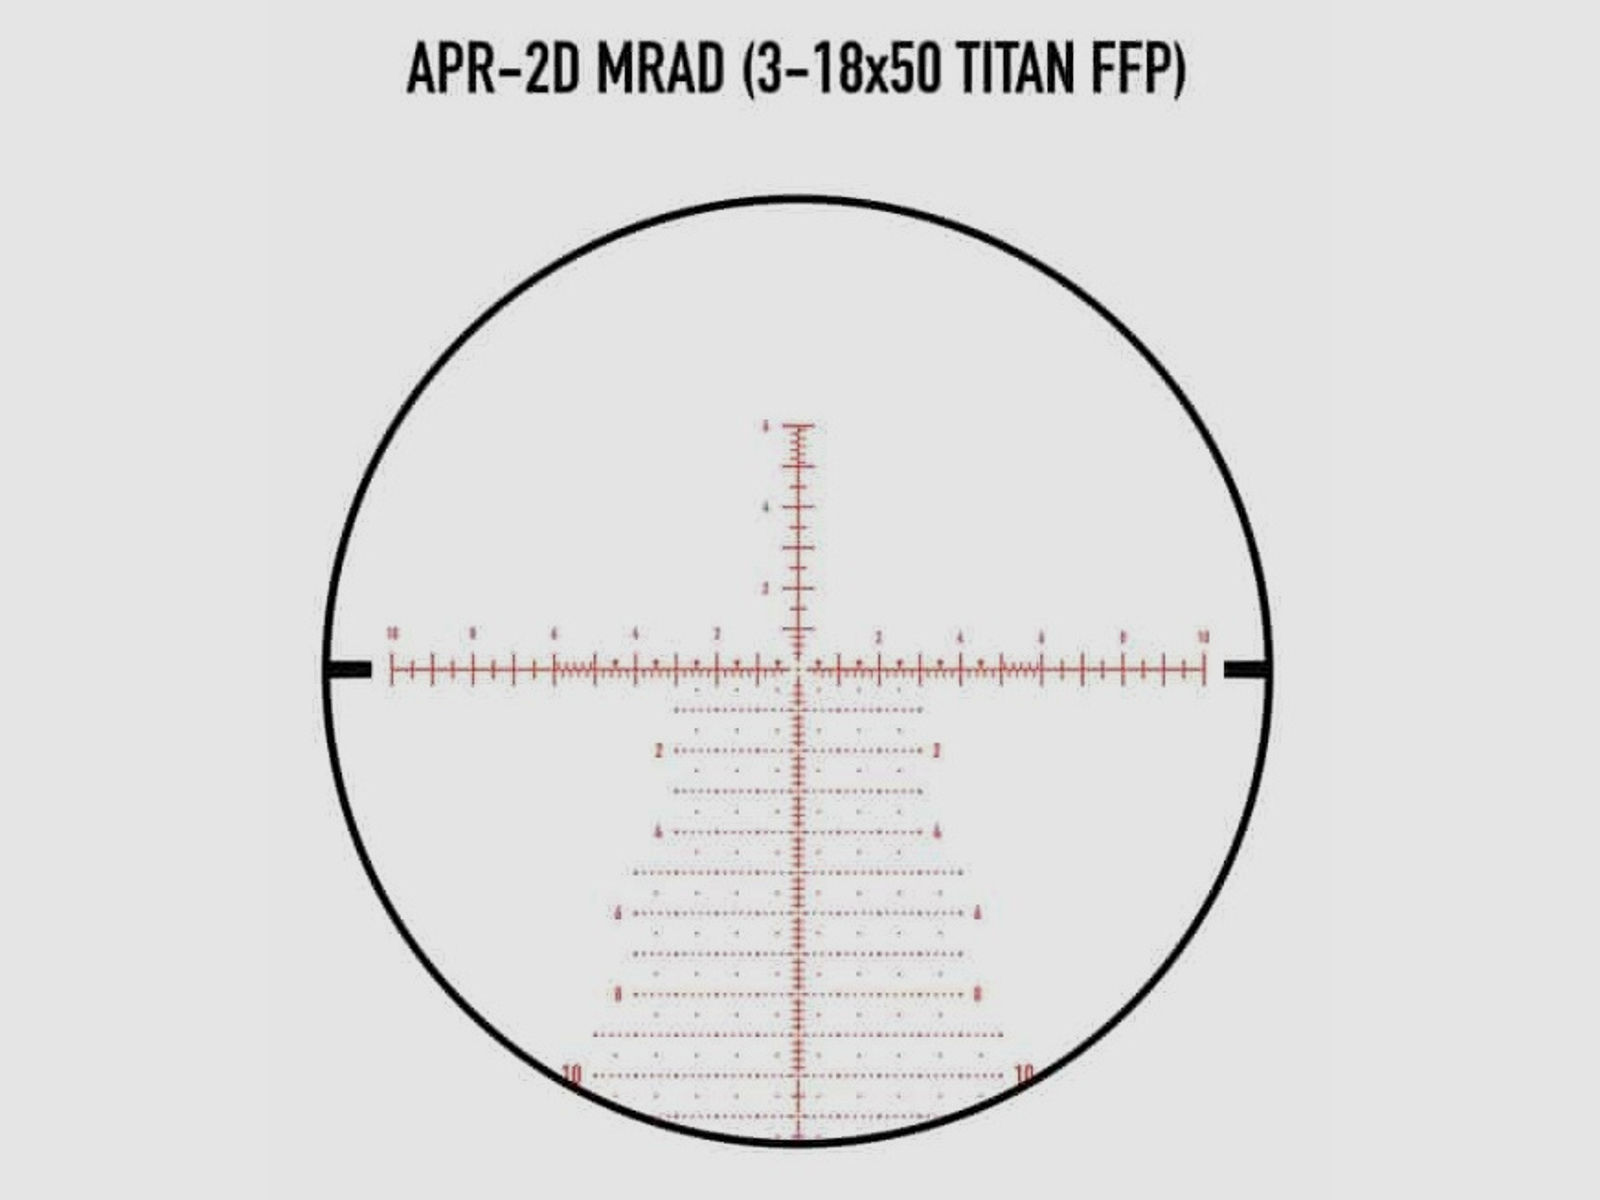 Zielfernrohr Element Optics Titan 3-18x50 FFP